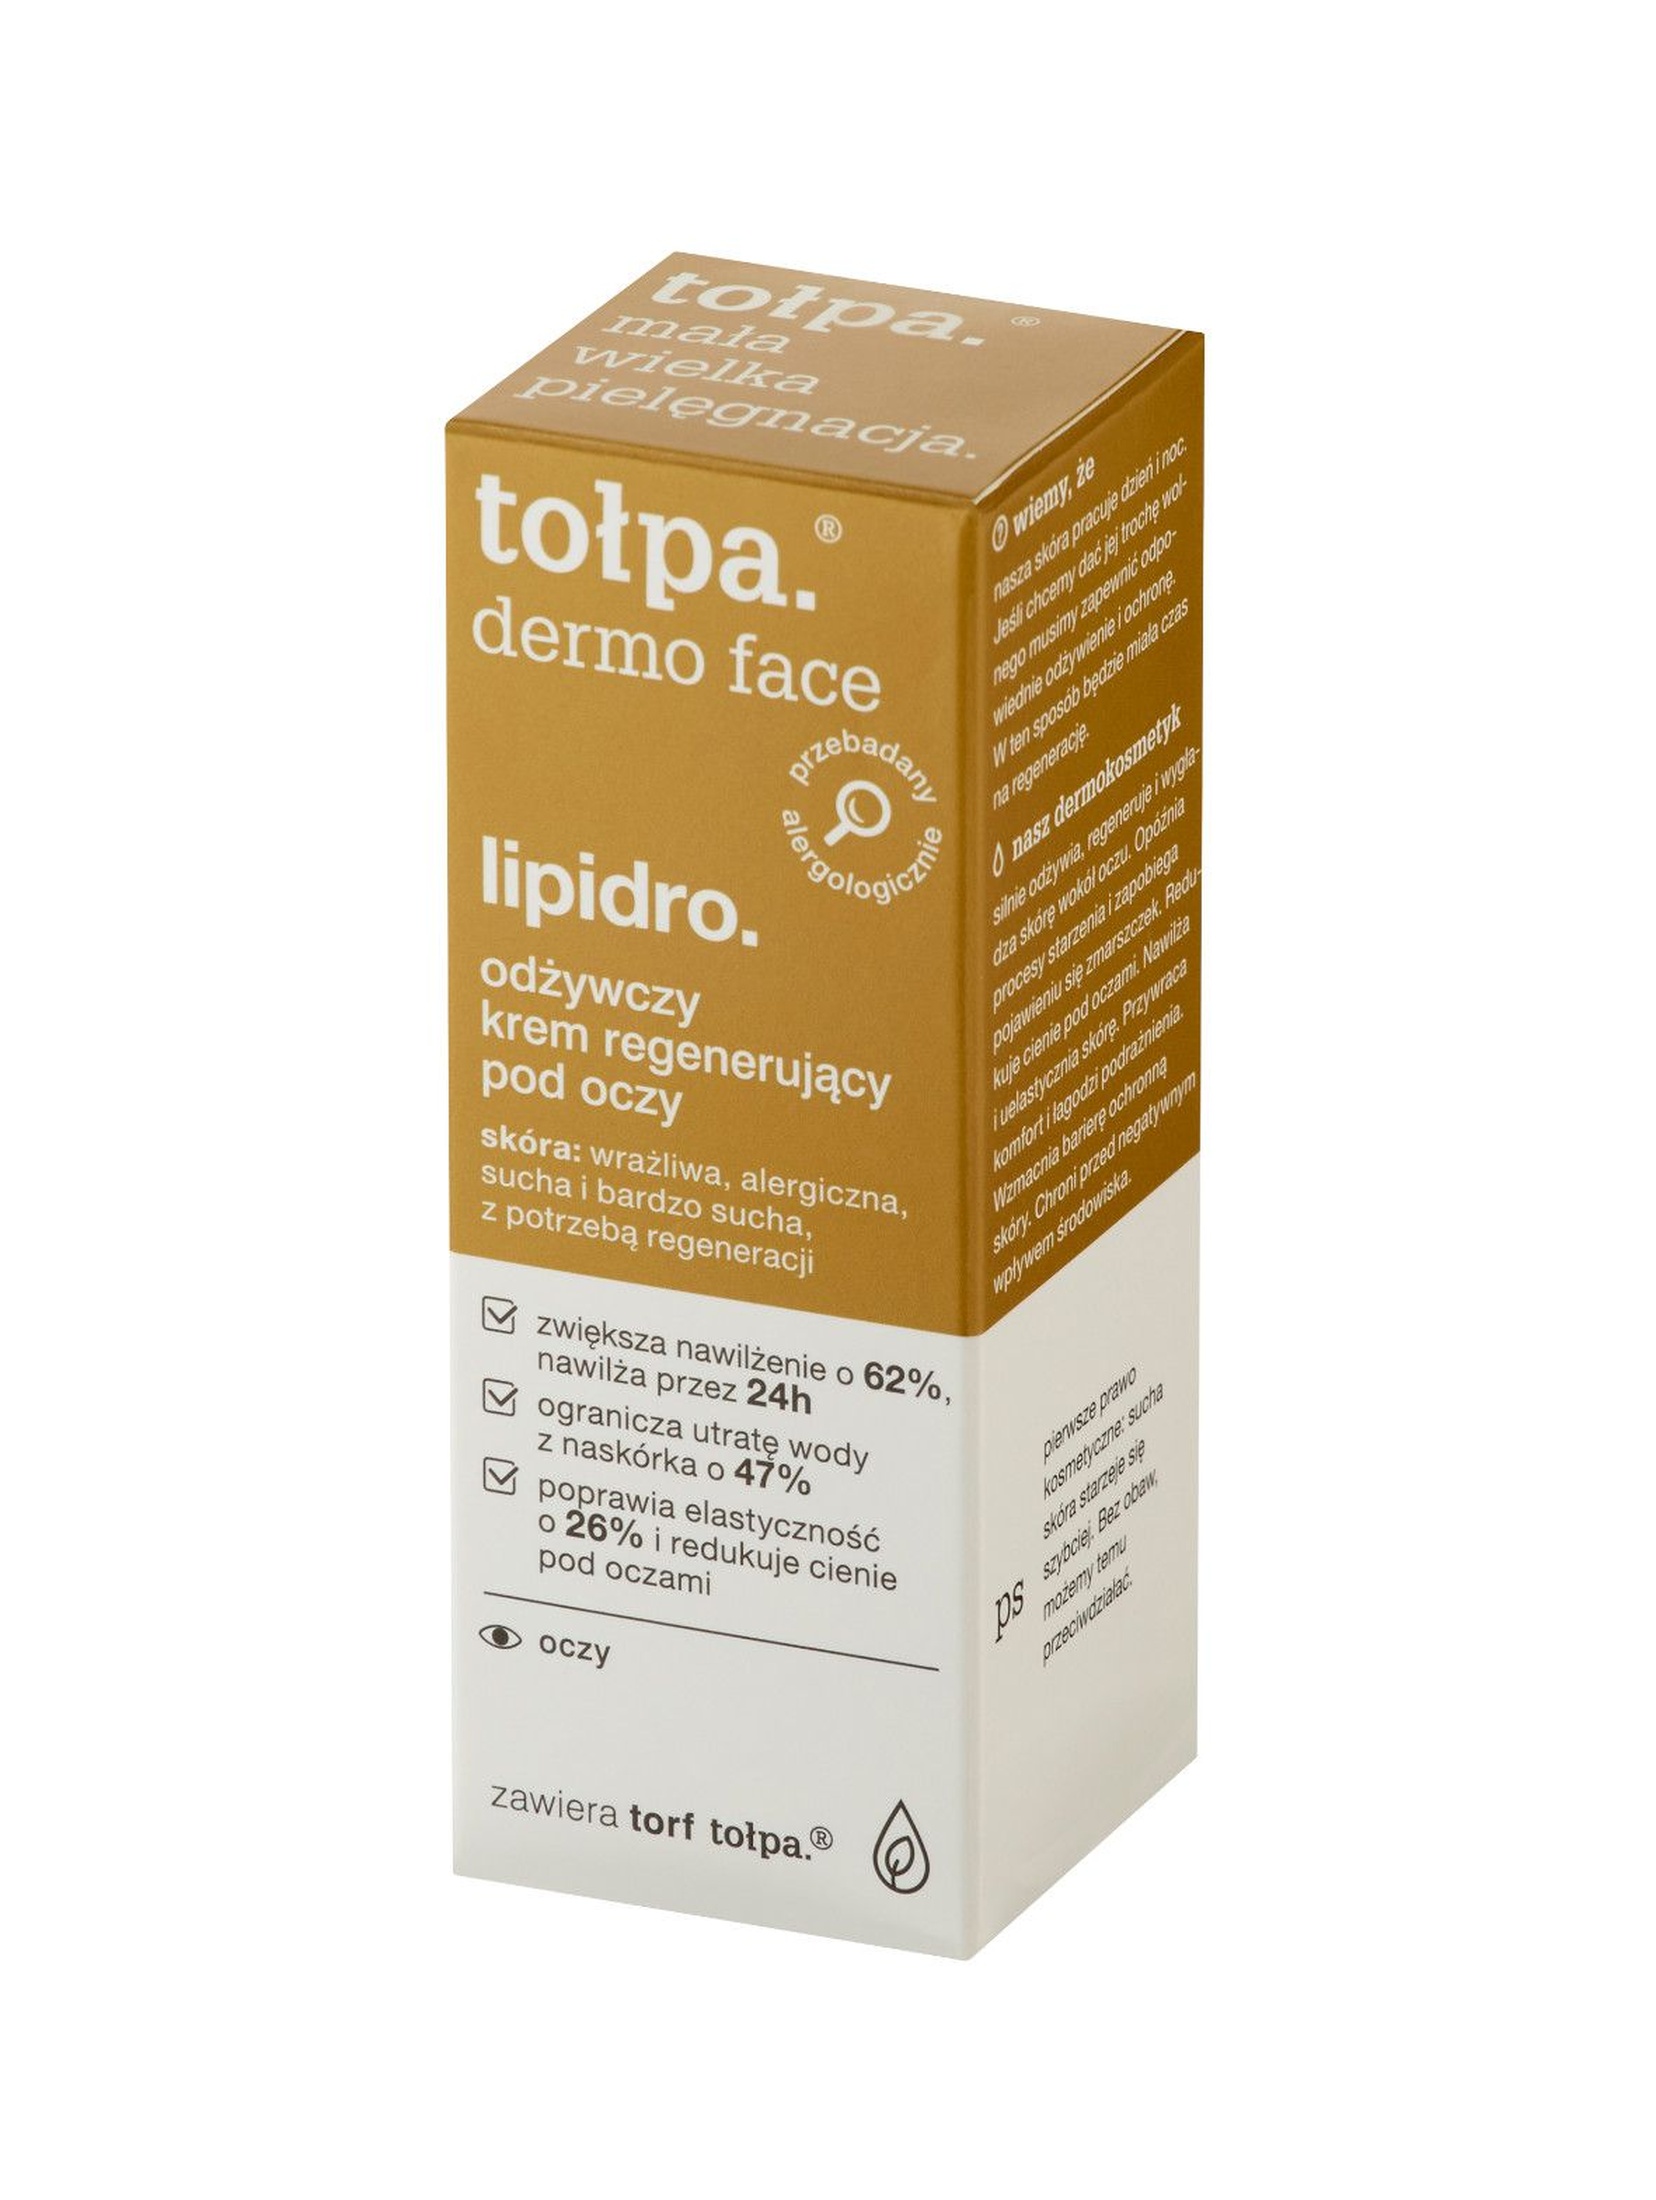 Lipidro Odżywczy krem regenerujący pod oczy Tołpa 10 ml